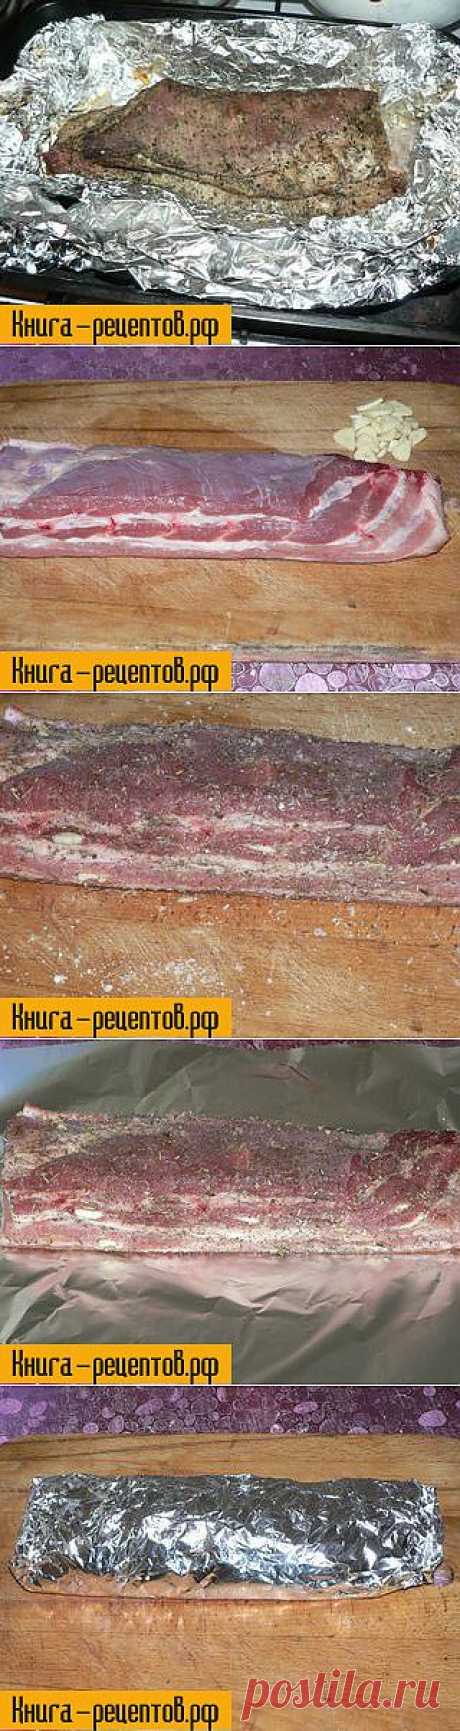 Подчеревок запеченный в фольге - фото рецепт приготовления на recipes-book.ru